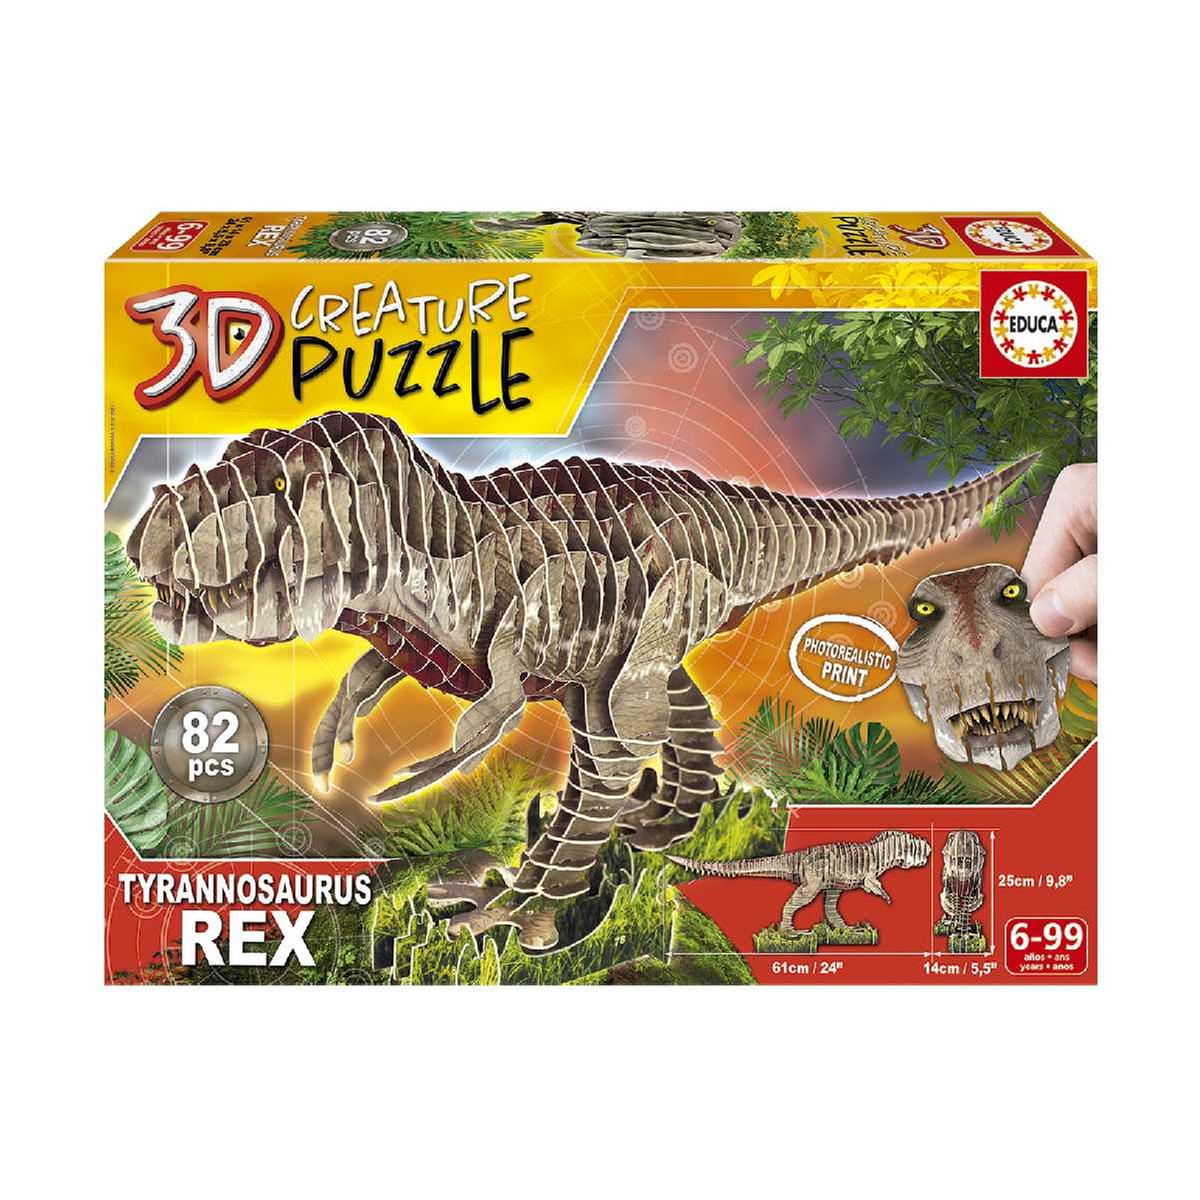 Borrás - T-Rex - 3D Creature Puzzle | 3d Puzzle | Toys"R"Us España